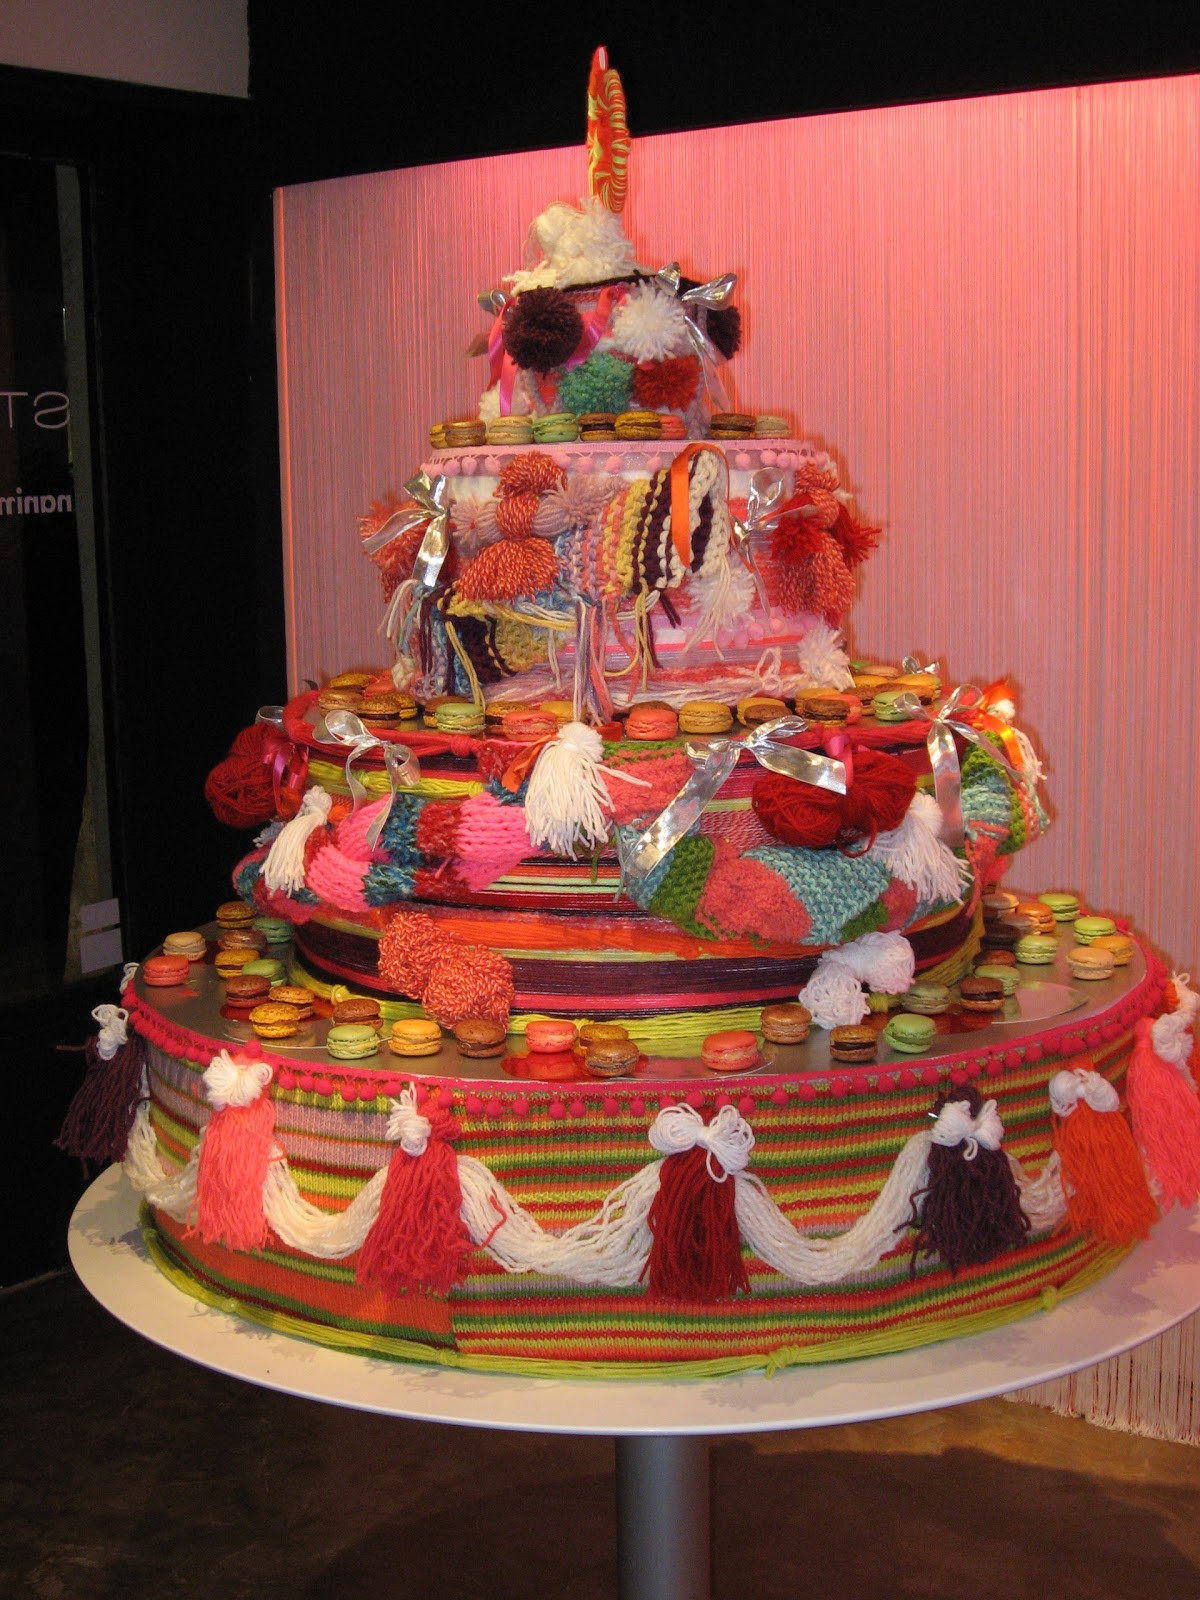 French Birthday Cake
 French wedding cakes